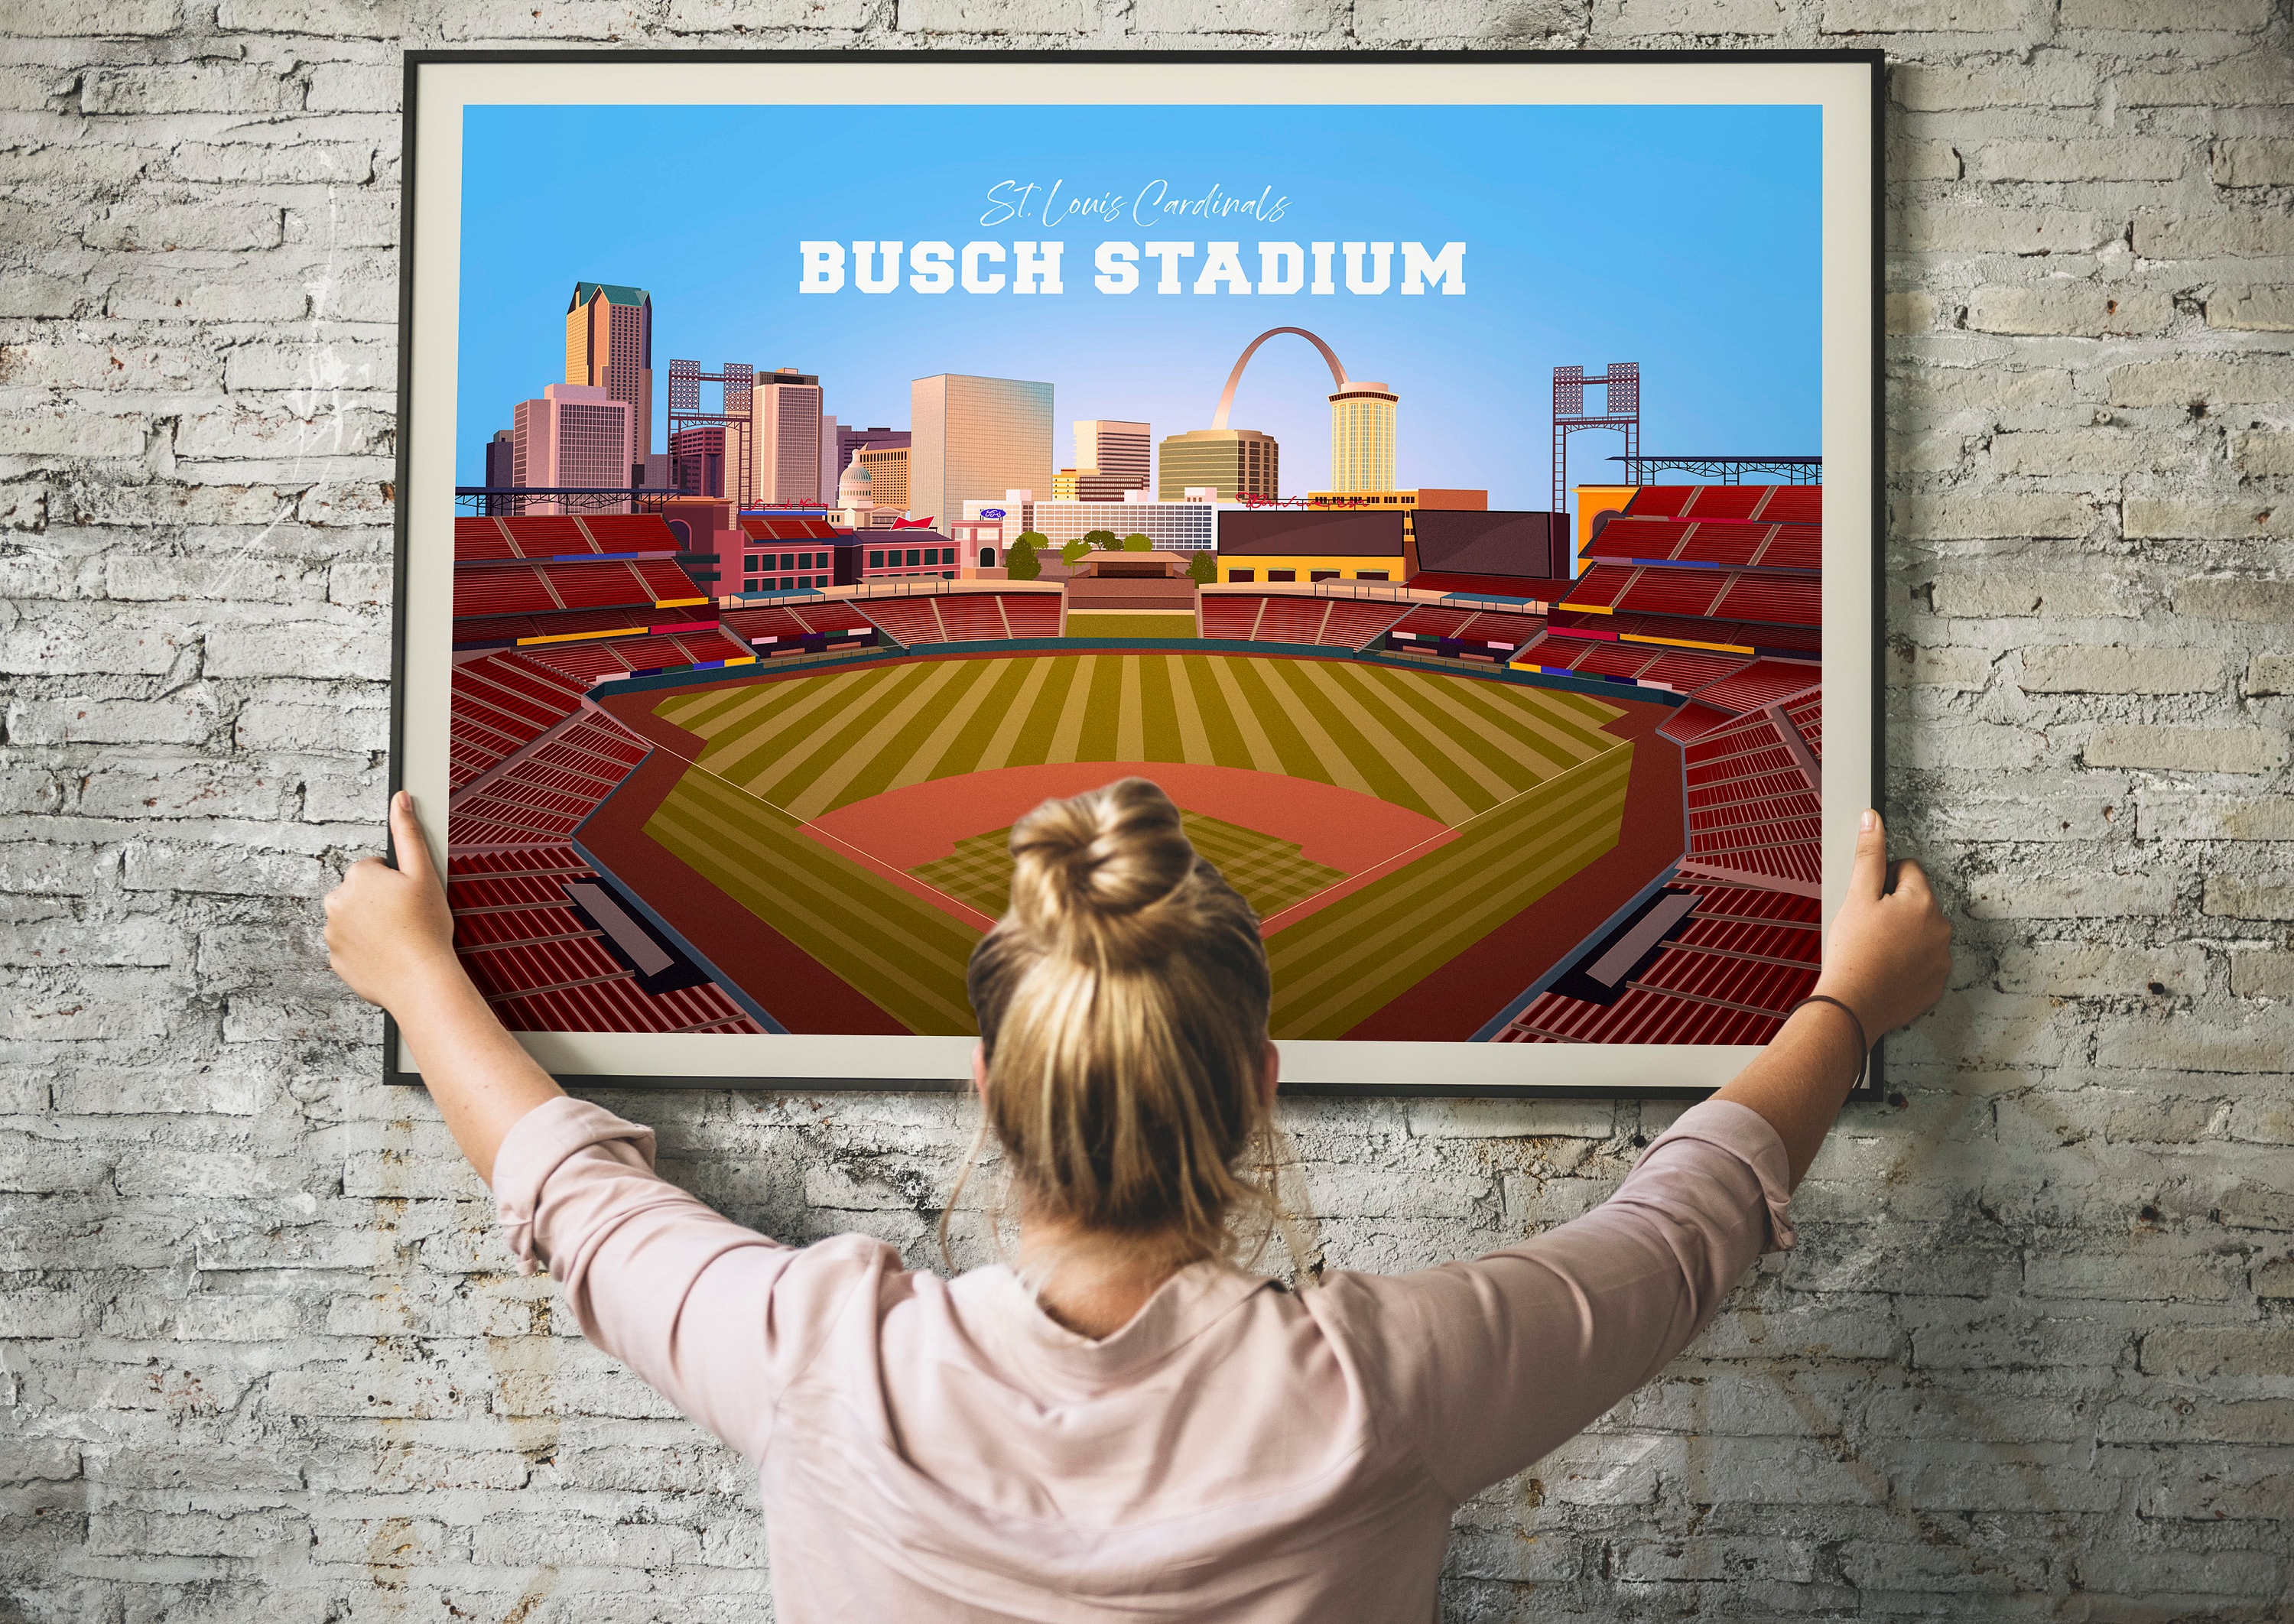 St. Louis Cardinals New Busch Stadium Inaugural Season Key Chain